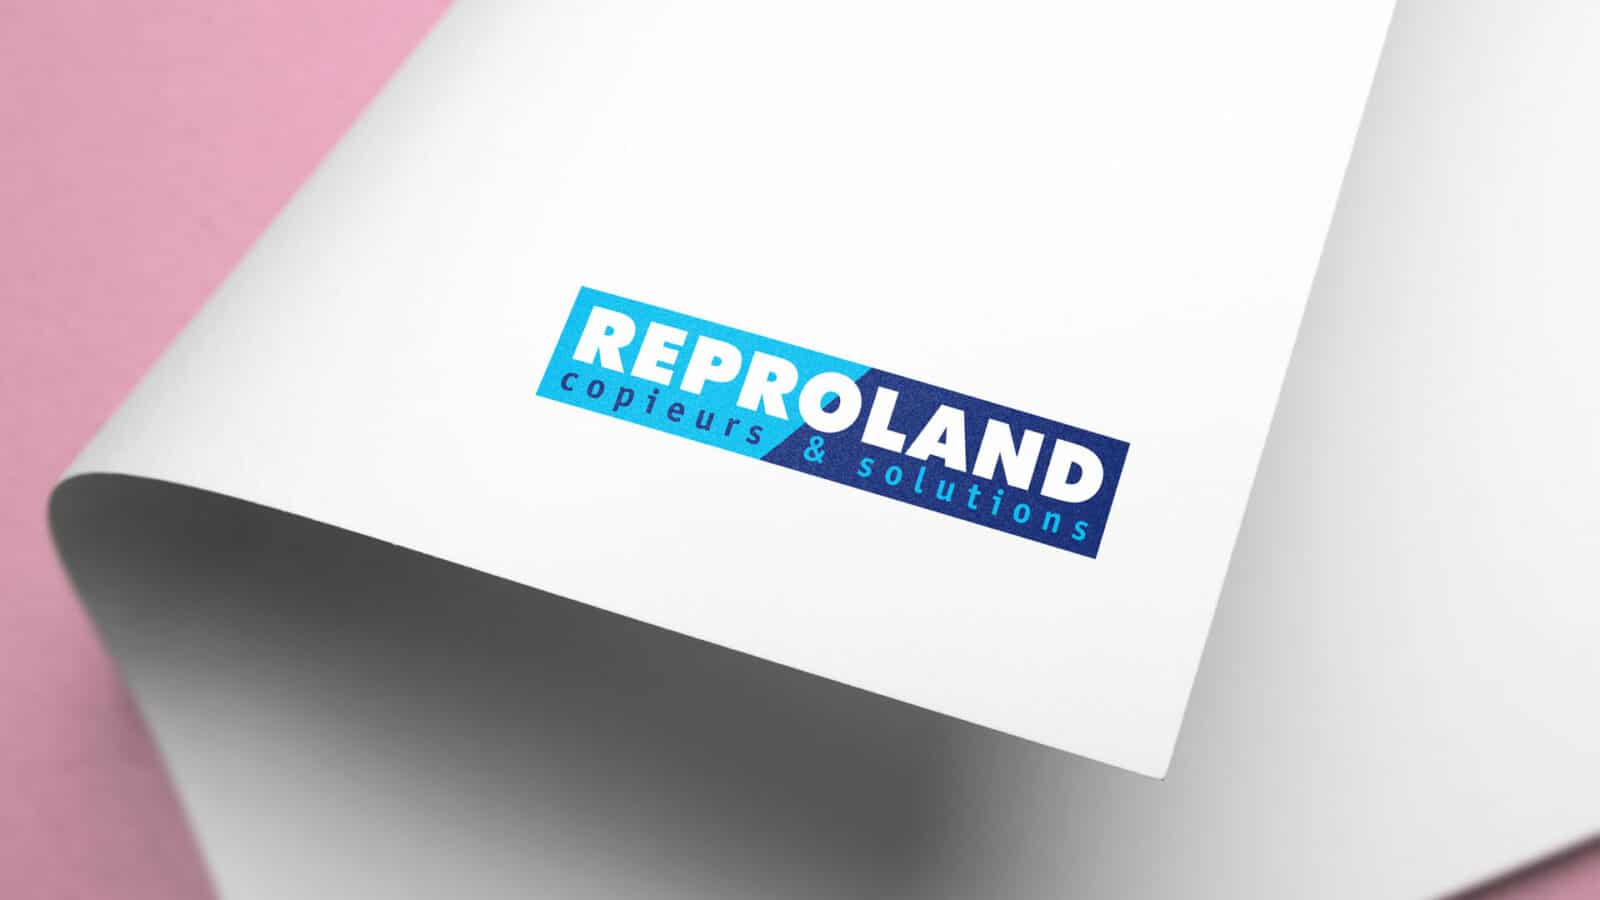 Logo reproland